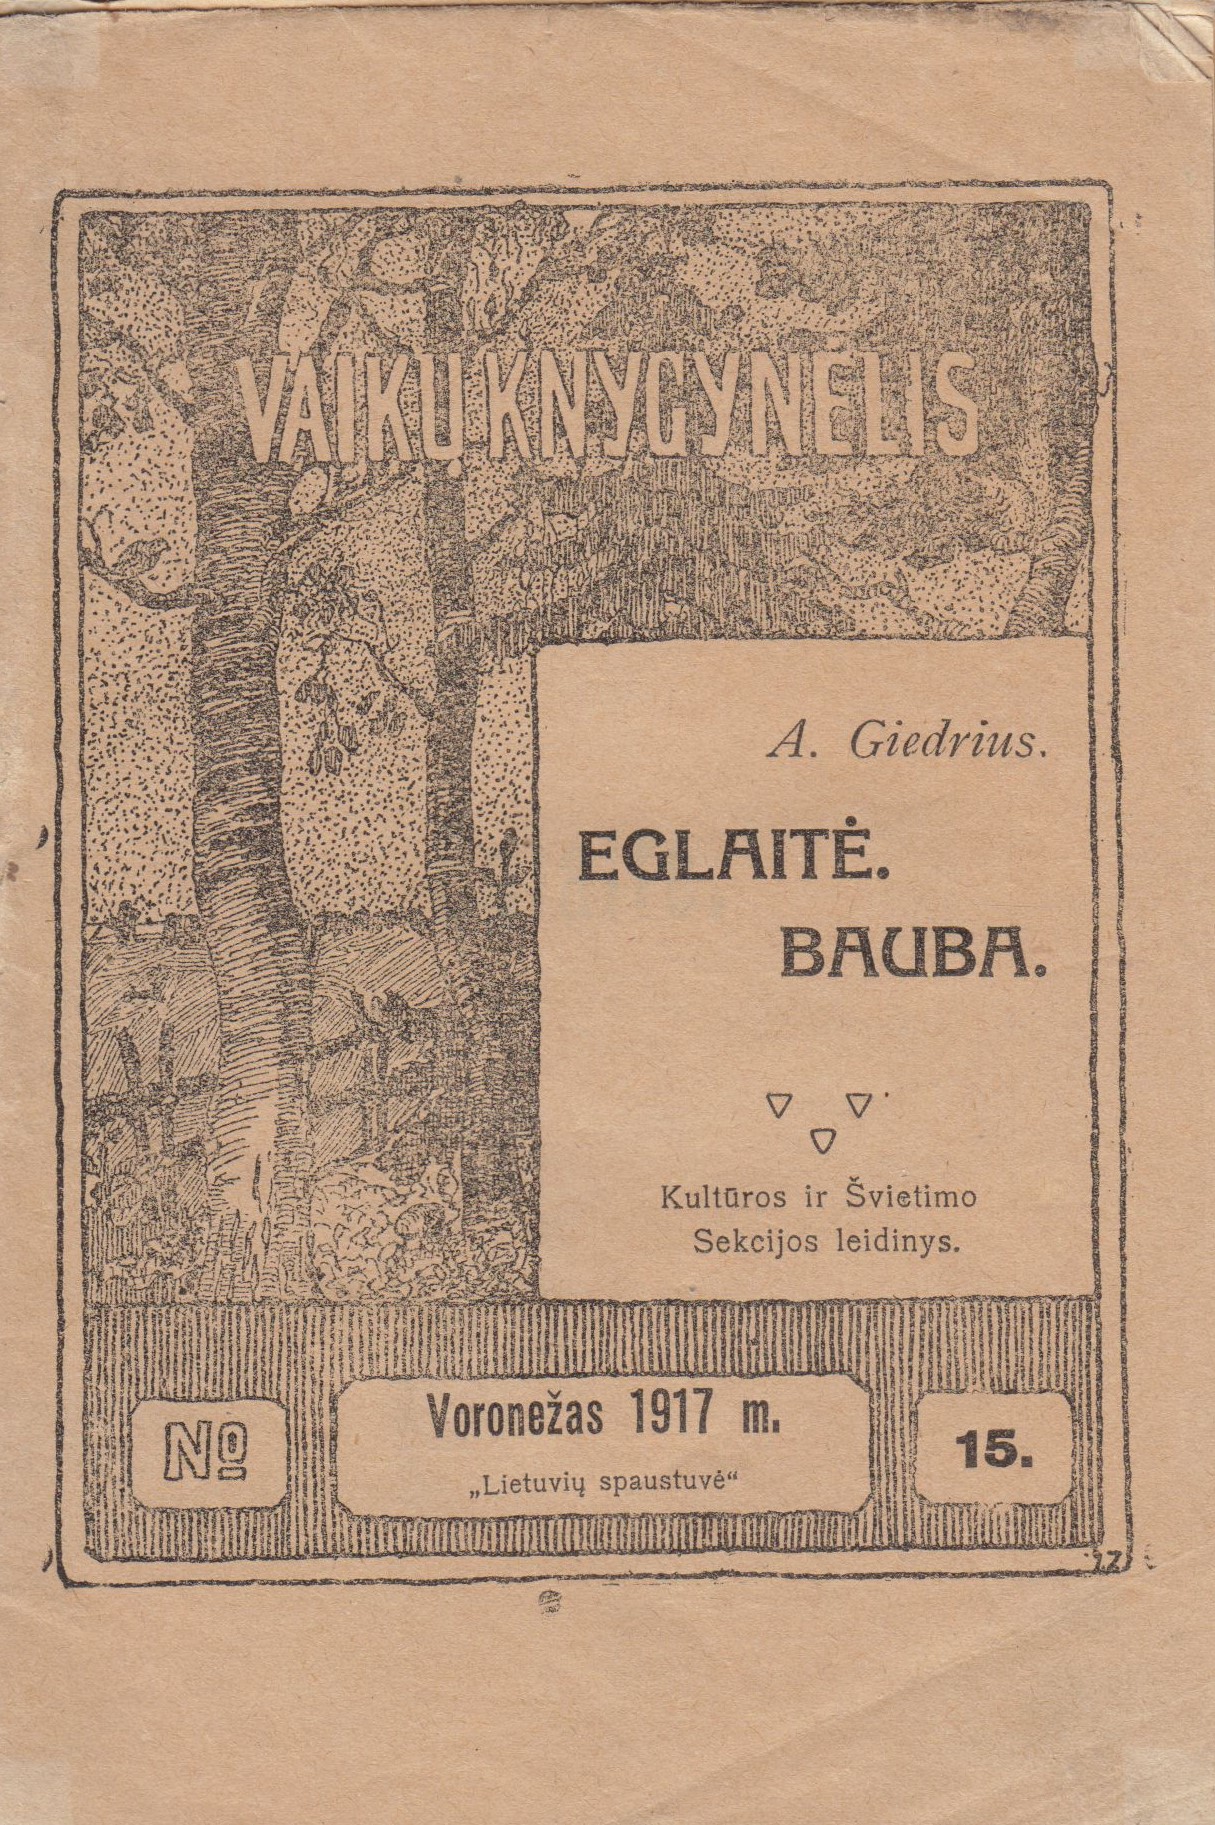 A. Giedrius. Eglaitė Bauba. Voronežas: „Lietuvių spaustuvė“, 1917 m. MLLM 6996